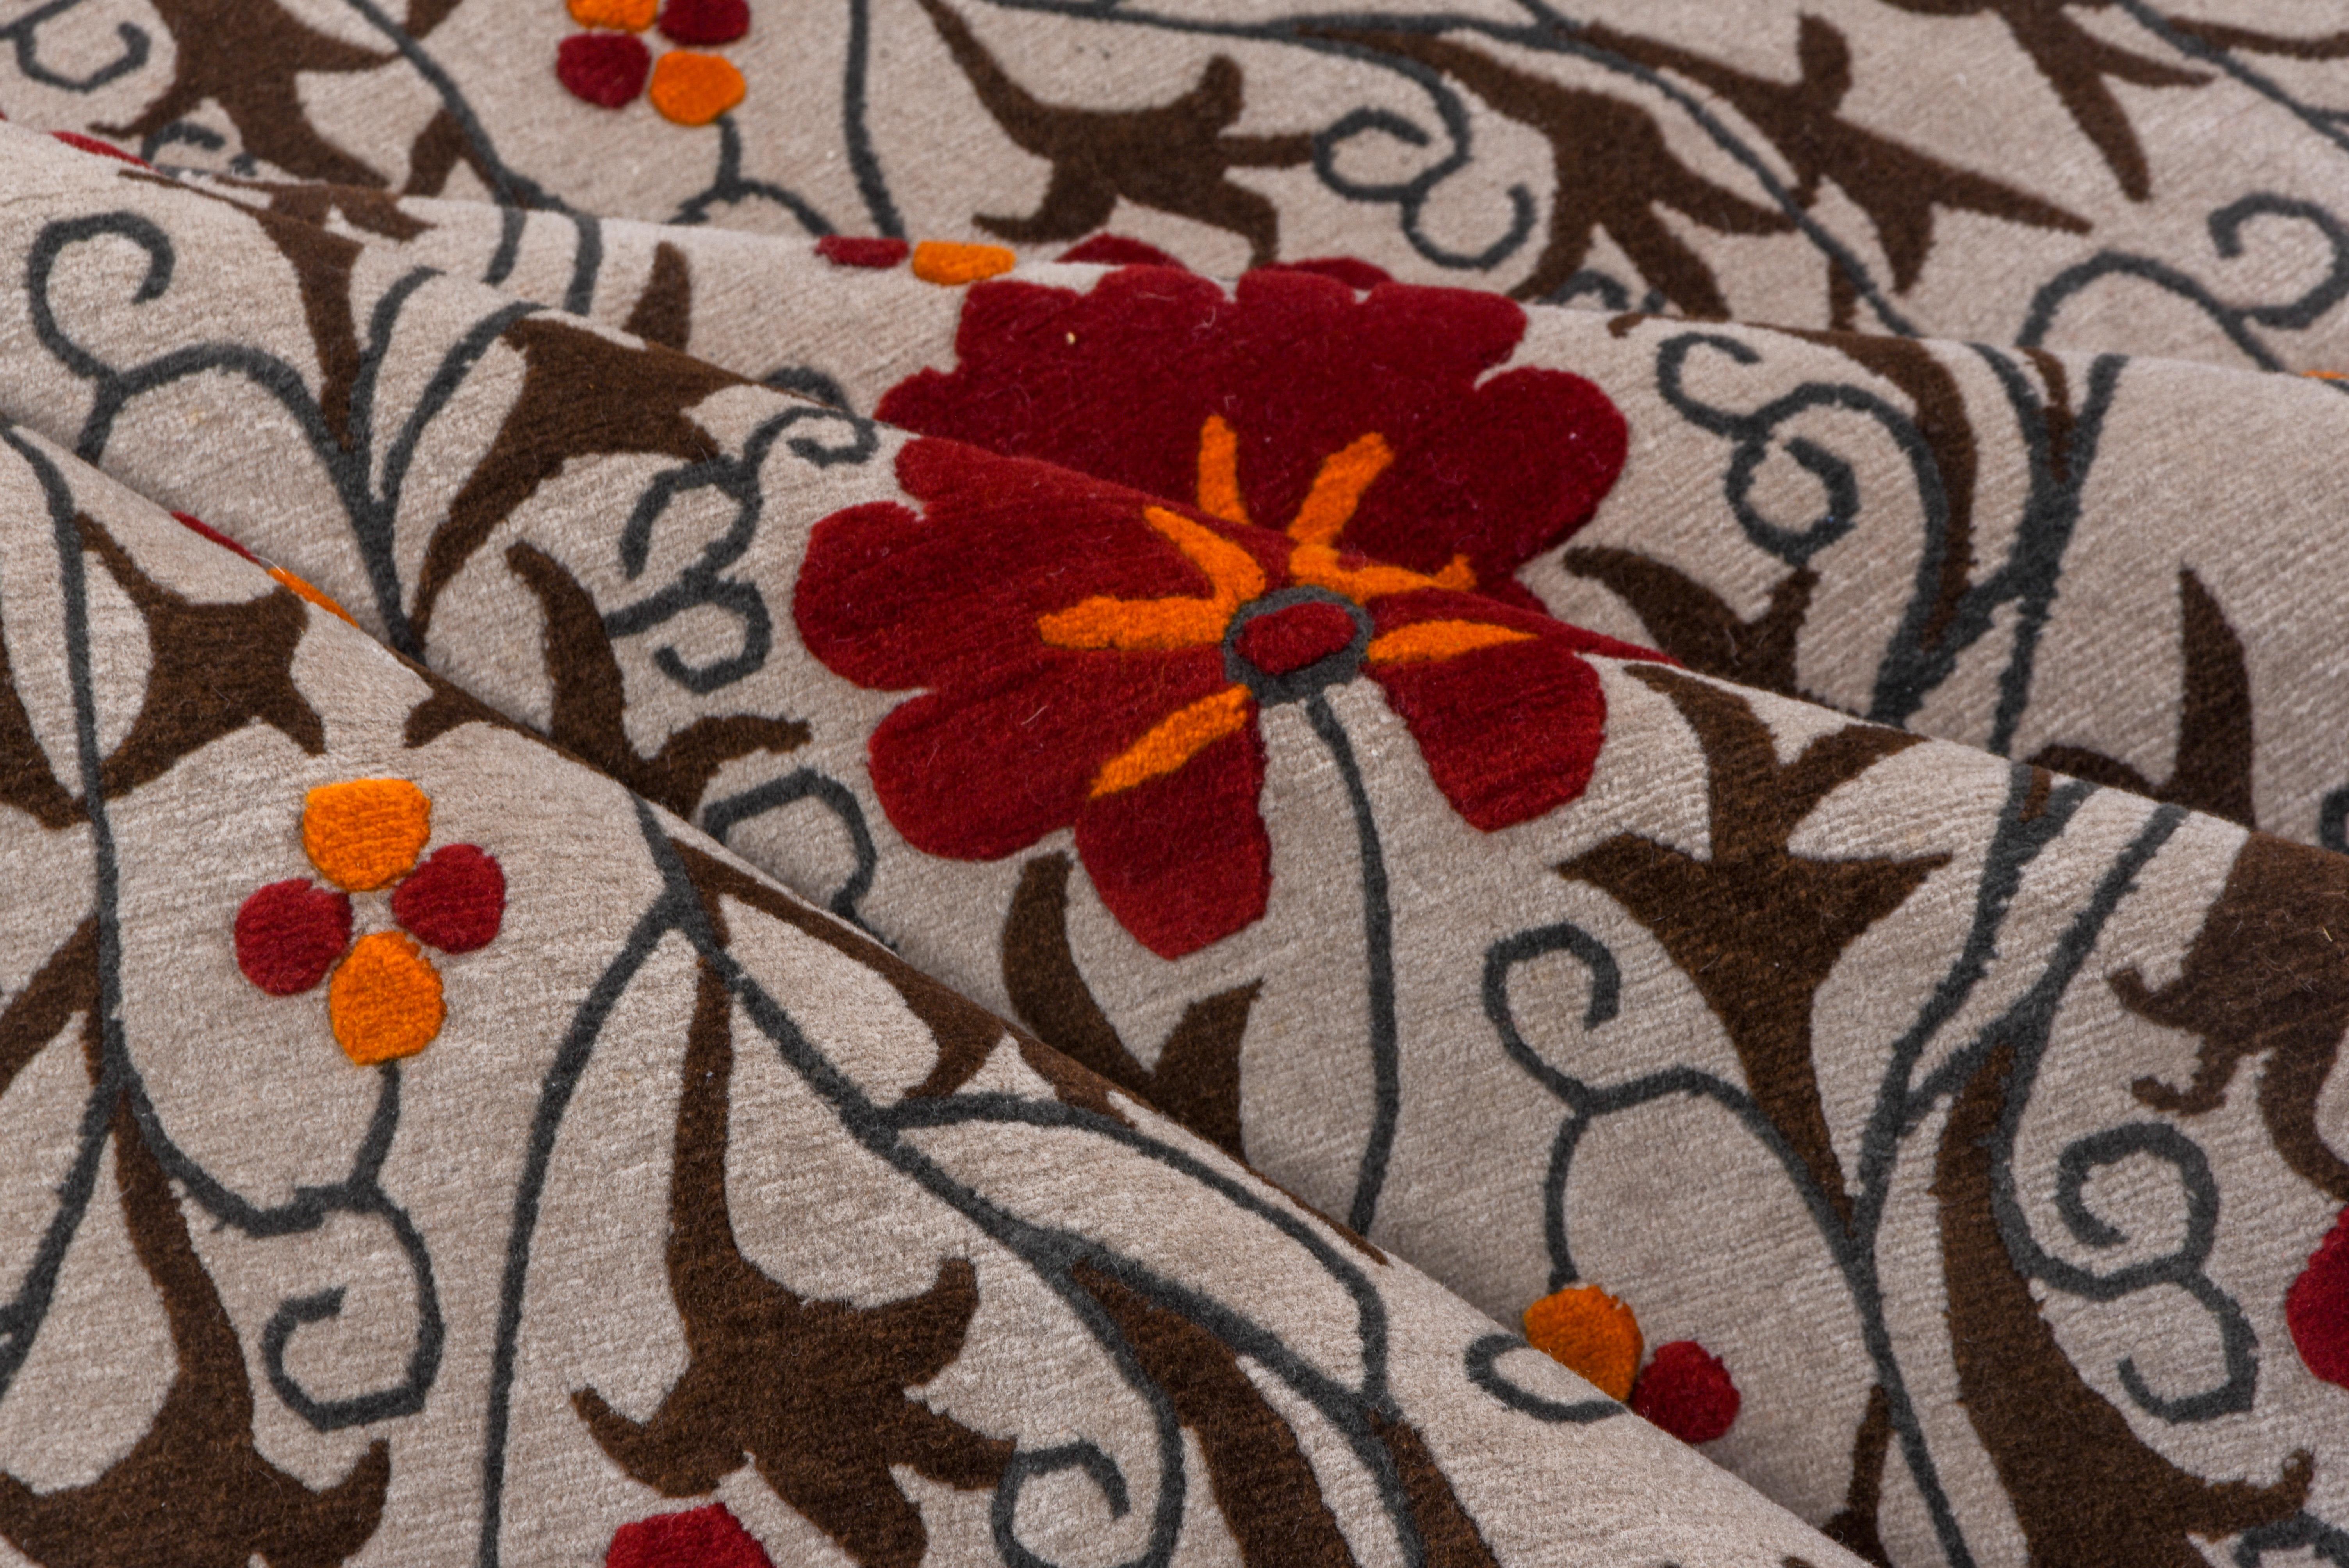 Der cremefarbene, randlose Grund zeigt einen sich vertikal wiederholenden Rapport aus roten Blüten und schlanken, mit Stacheln besetzten Blättern in einem Stil, der an usbekische Suzani-Stickereien erinnert. Sieht aus wie ein riesiges Textil mit